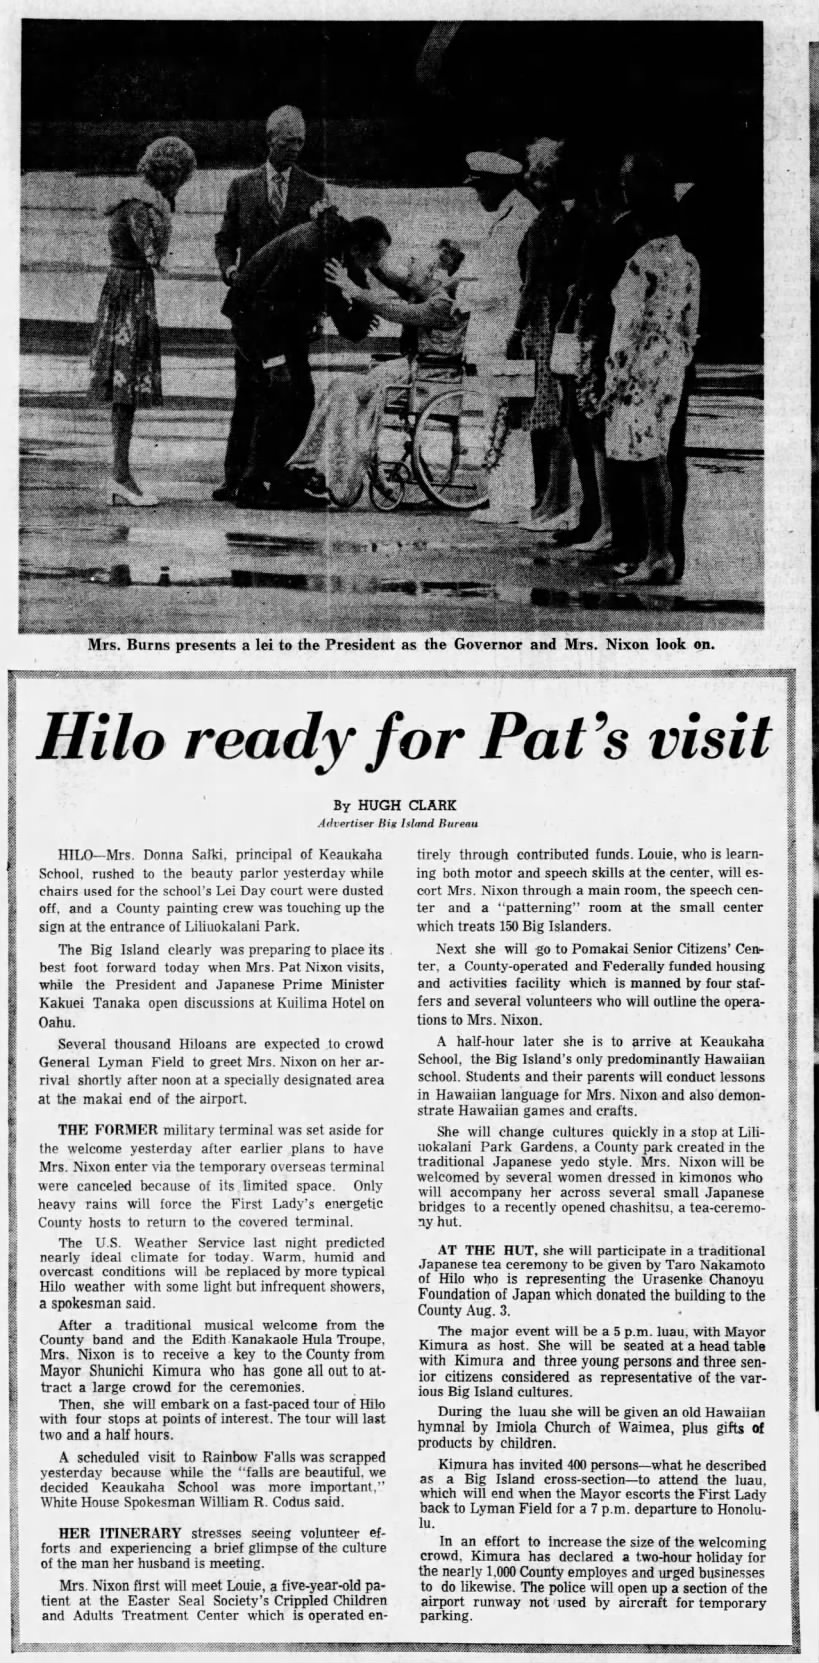 1972 visit of Pat Nixon